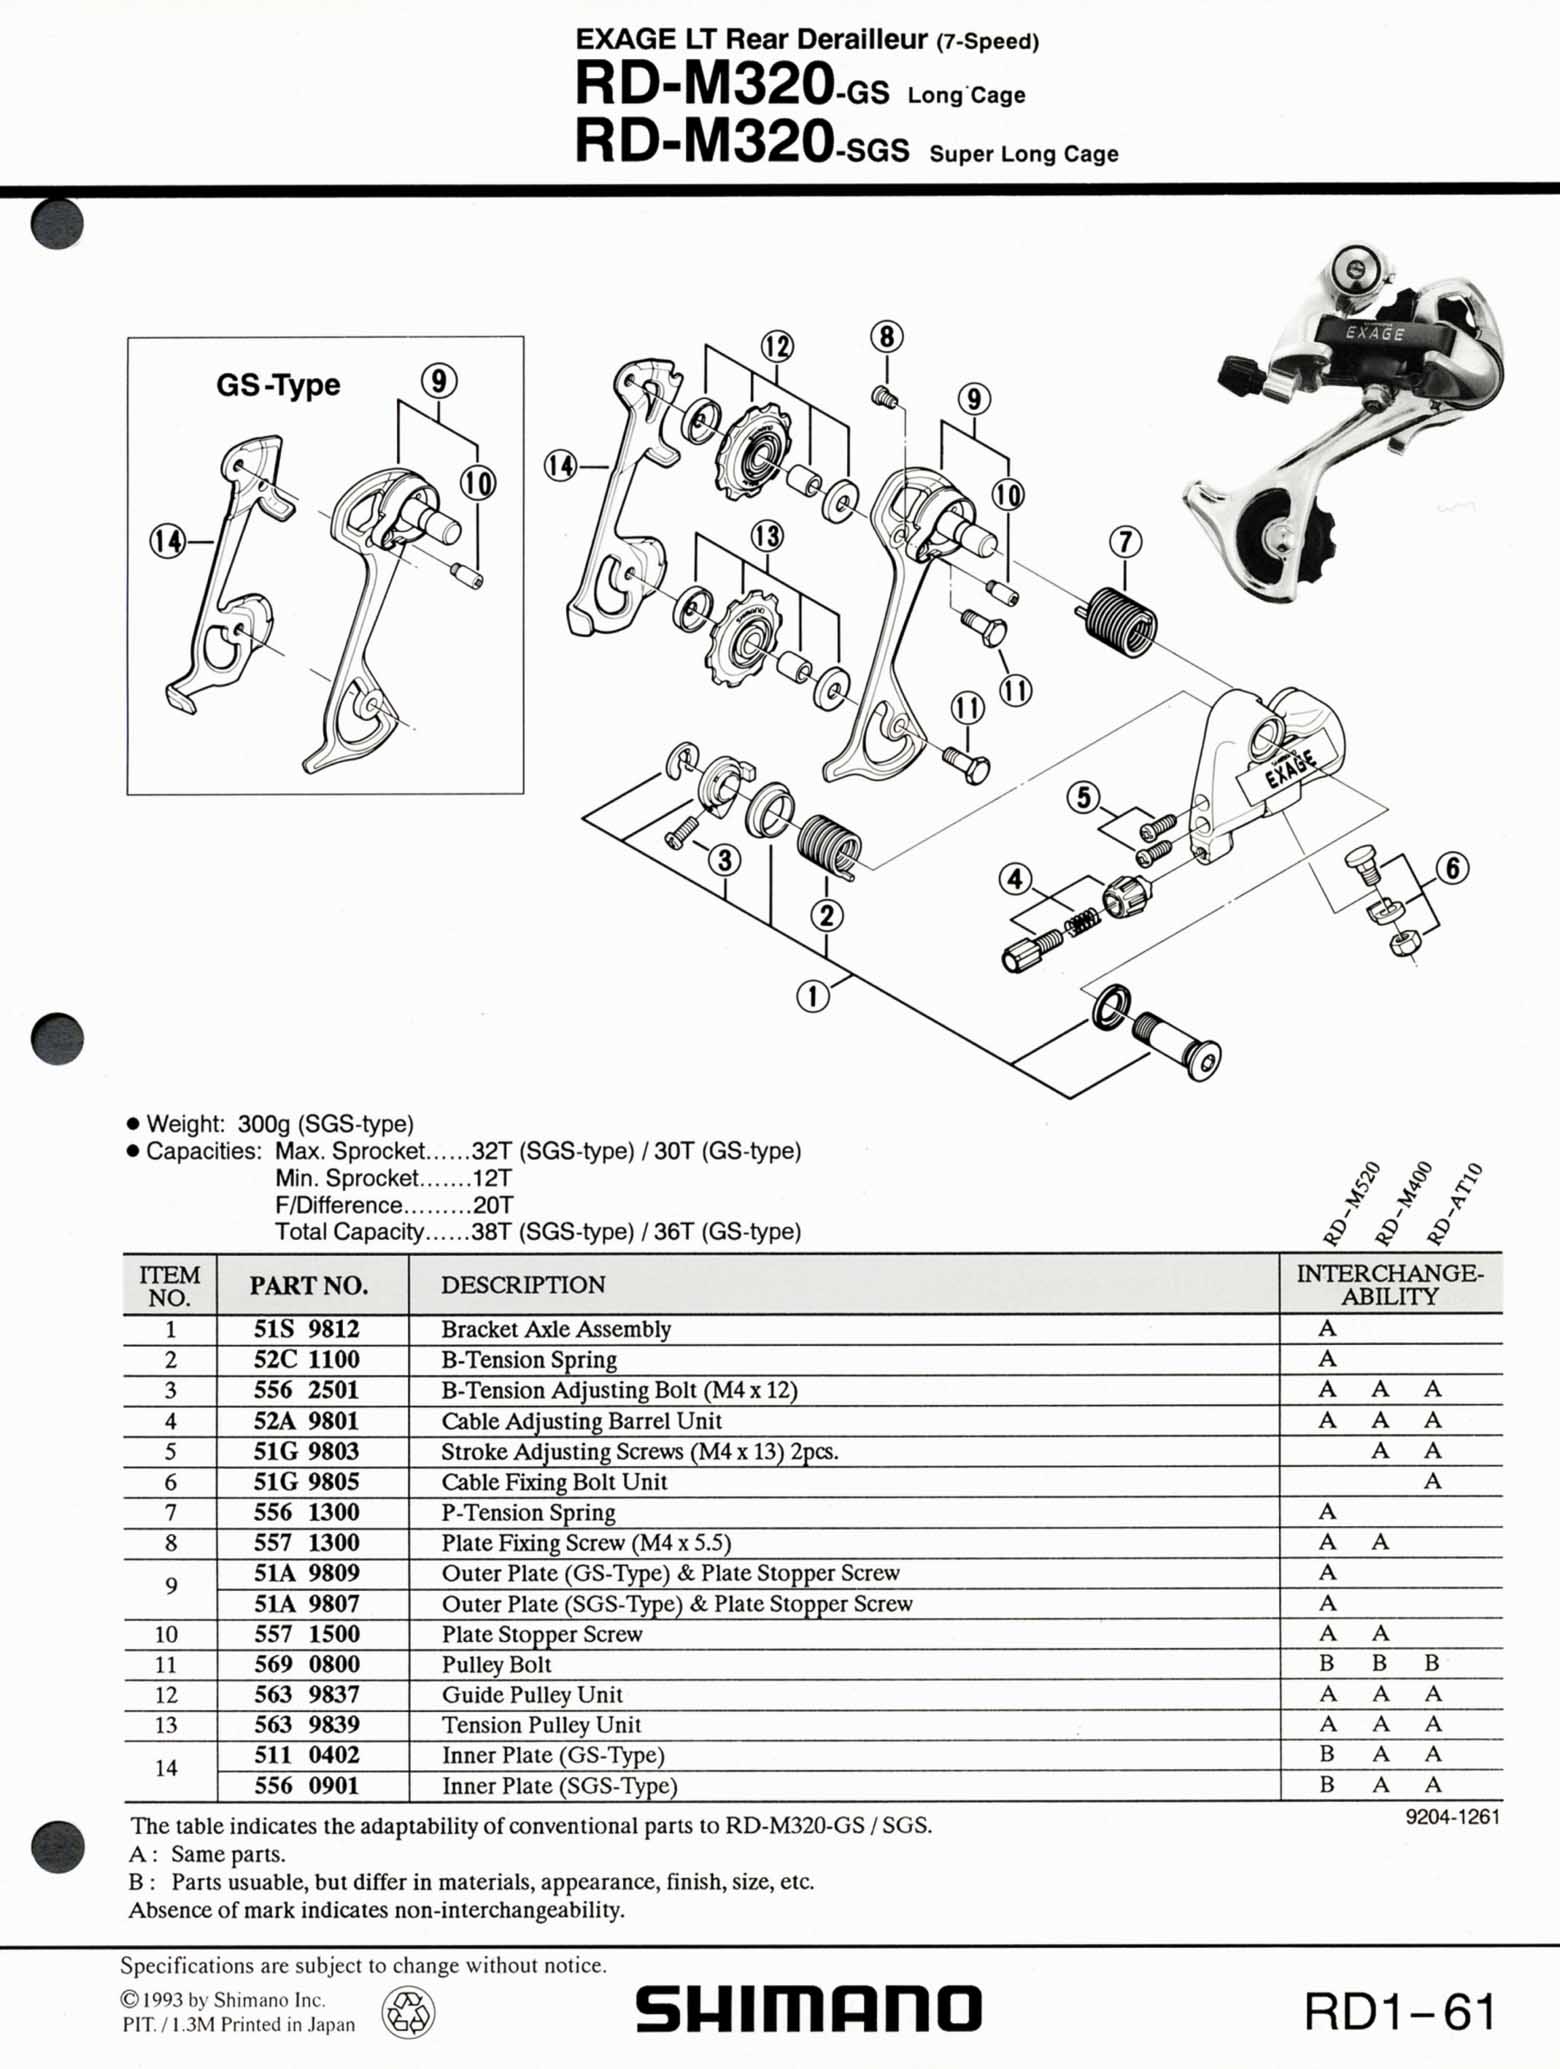 Shimano Bicycle Parts - 1993 scan 03 main image